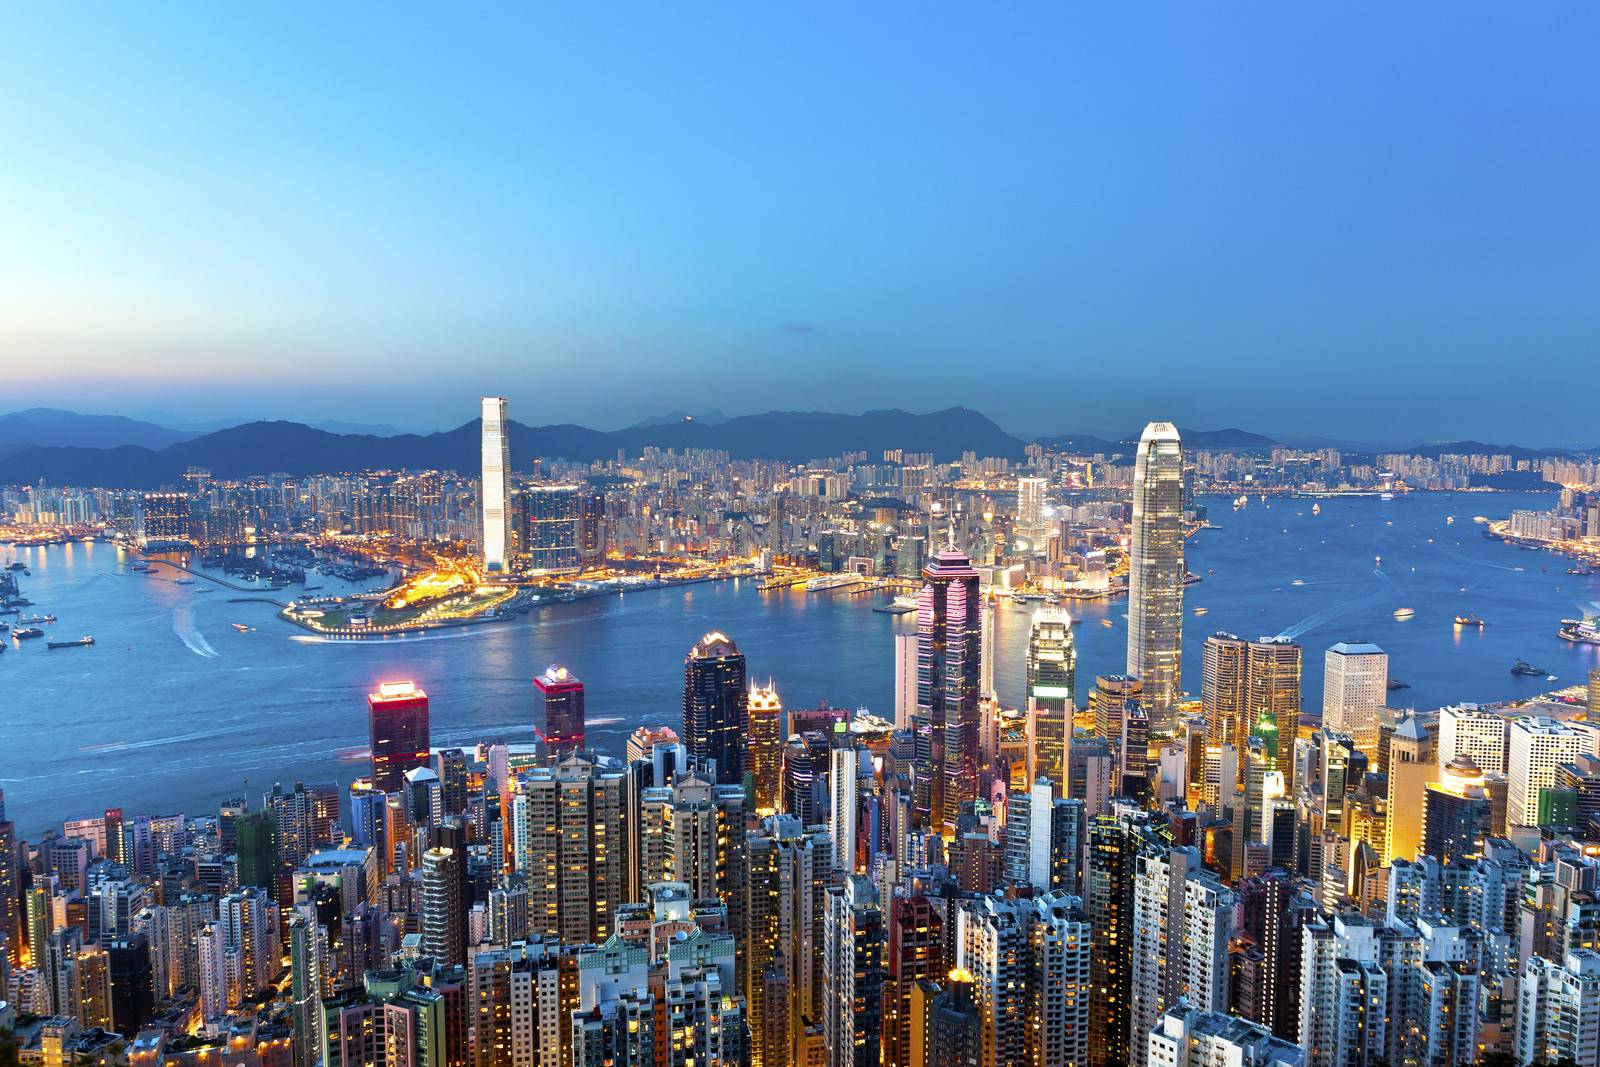 Hong Kong skyline at night by kawing921